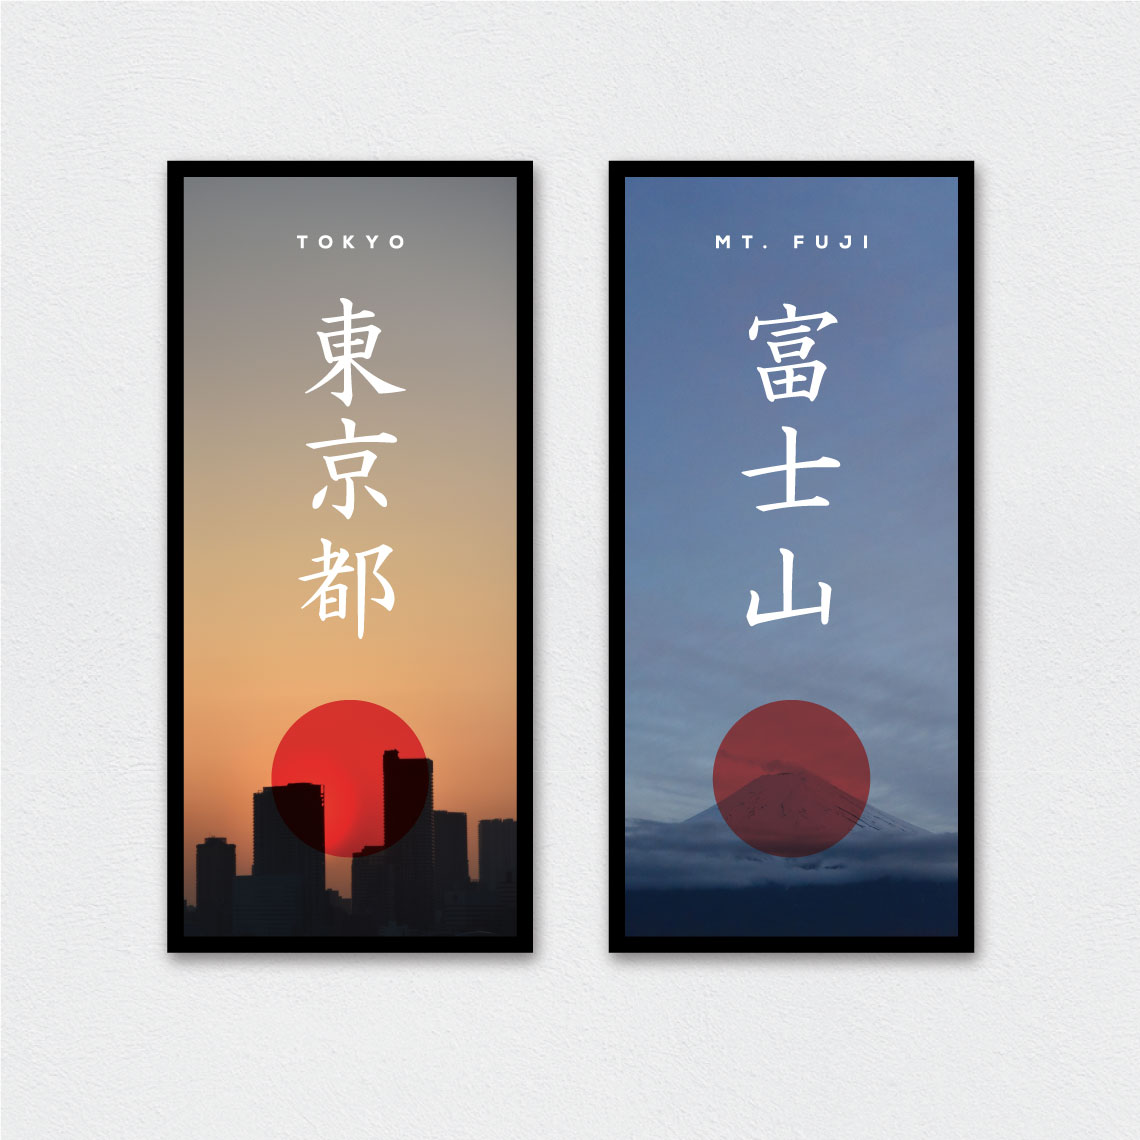 Japan vacation posters larger version. Tokyo and Mt. Fuji.